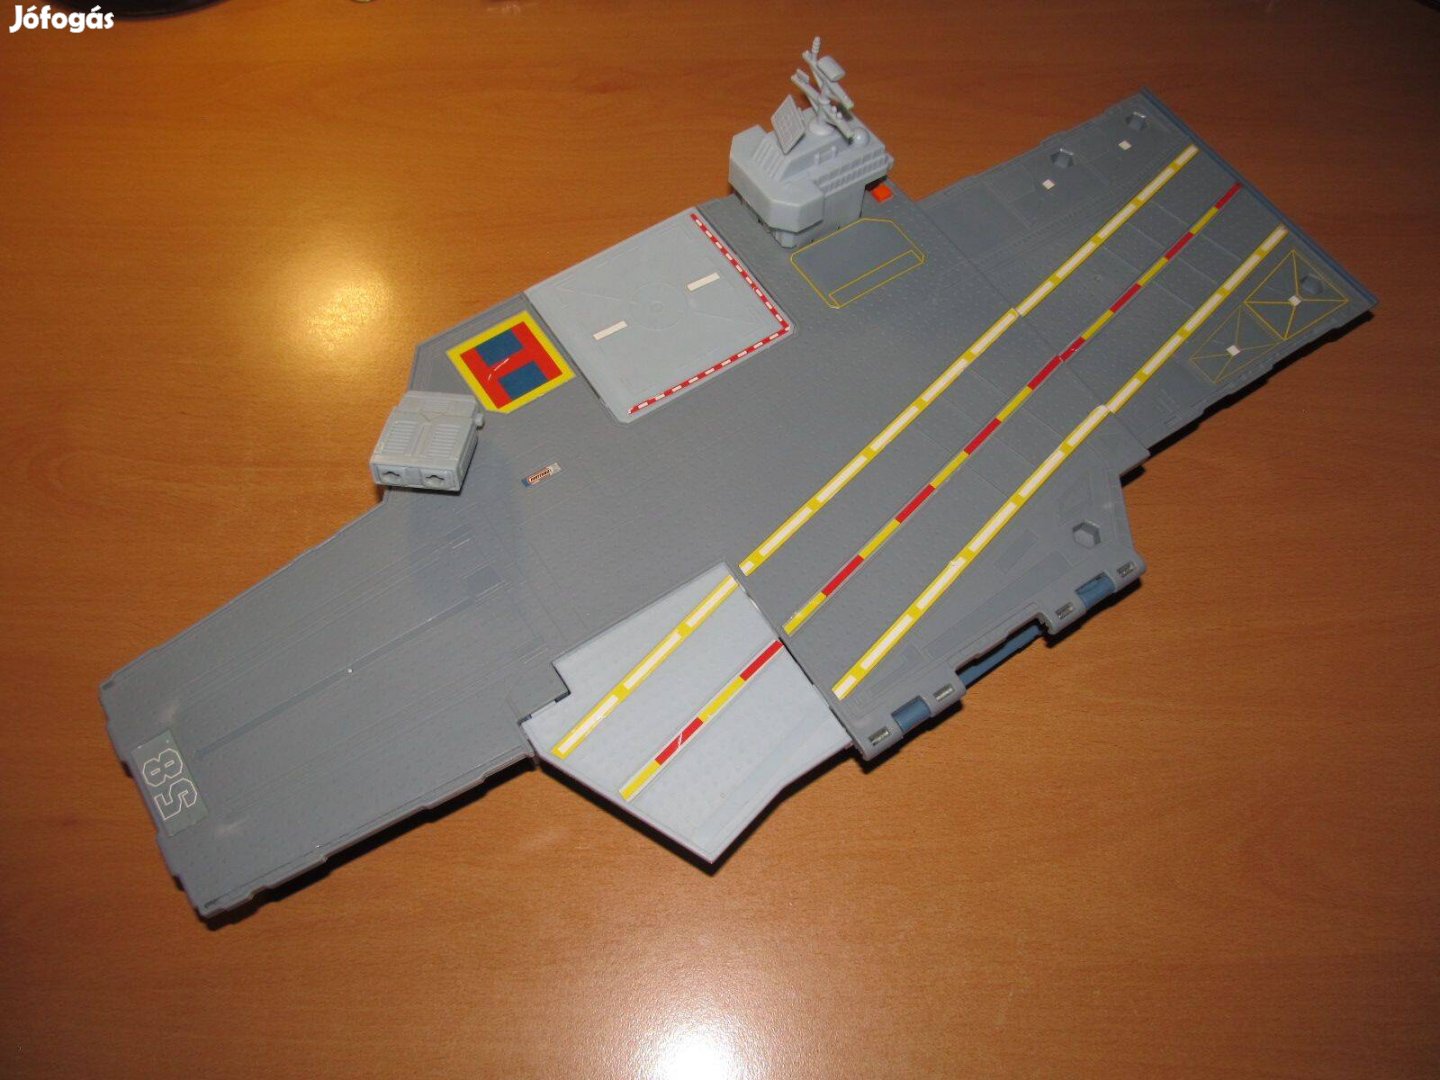 Matchbox Sky Busters Air Carrier játékszett, bázis (Mattel) 55 cm